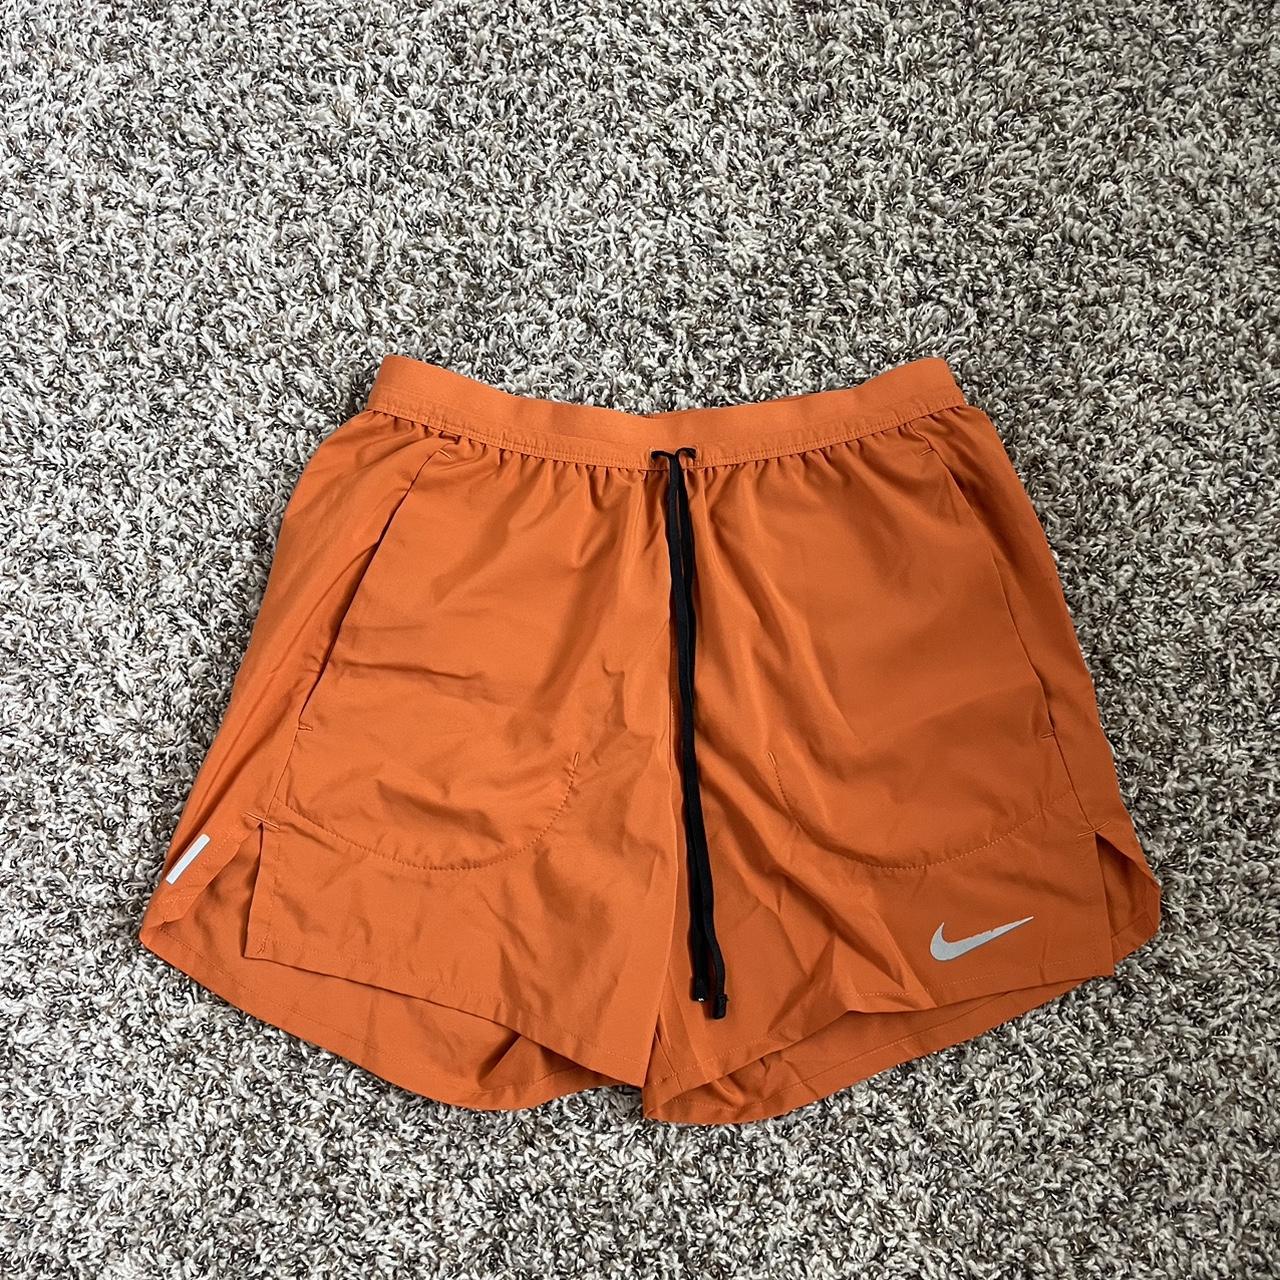 Nike Men's Orange Shorts | Depop